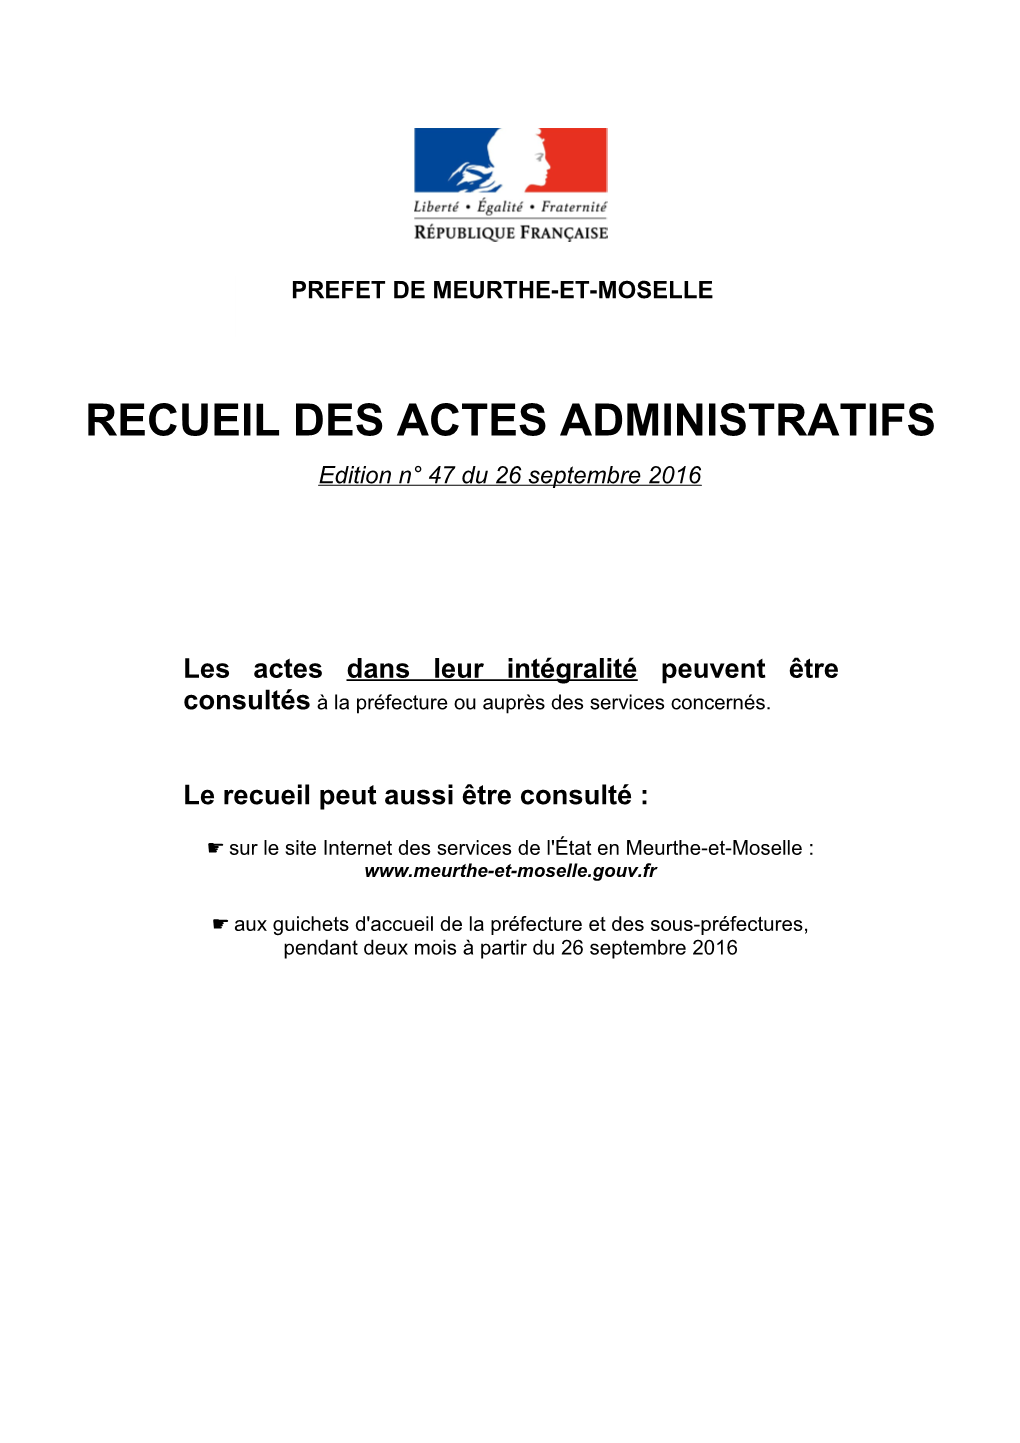 RECUEIL DES ACTES ADMINISTRATIFS Edition N° 47 Du 26 Septembre 2016